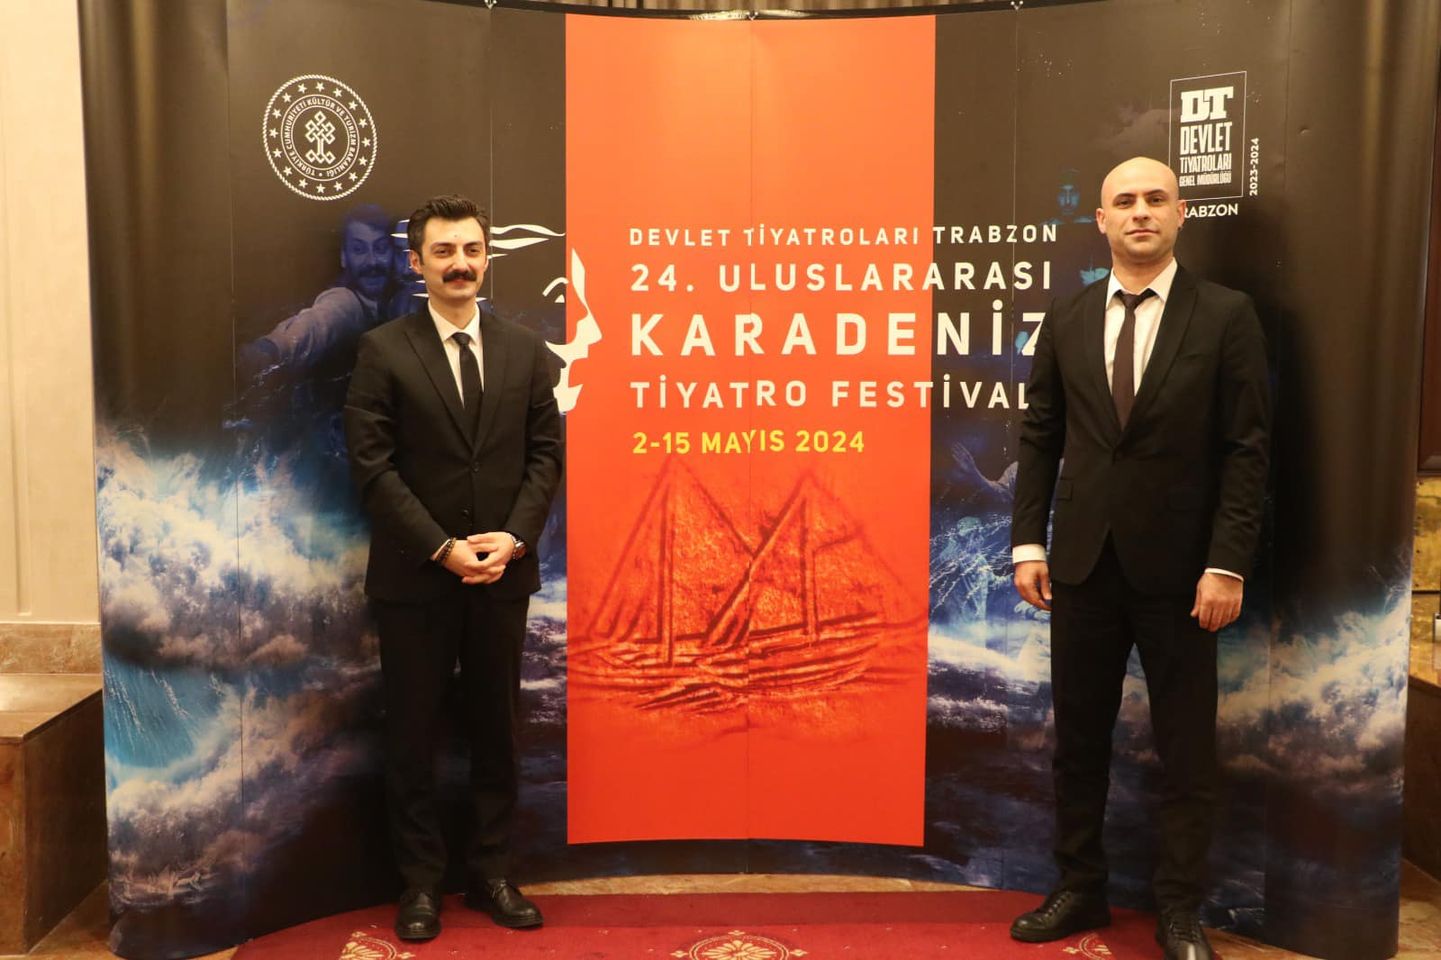 Trabzon Devlet Tiyatrosu Uluslararası Karadeniz Tiyatro Festivali'ni Düzenleyecek